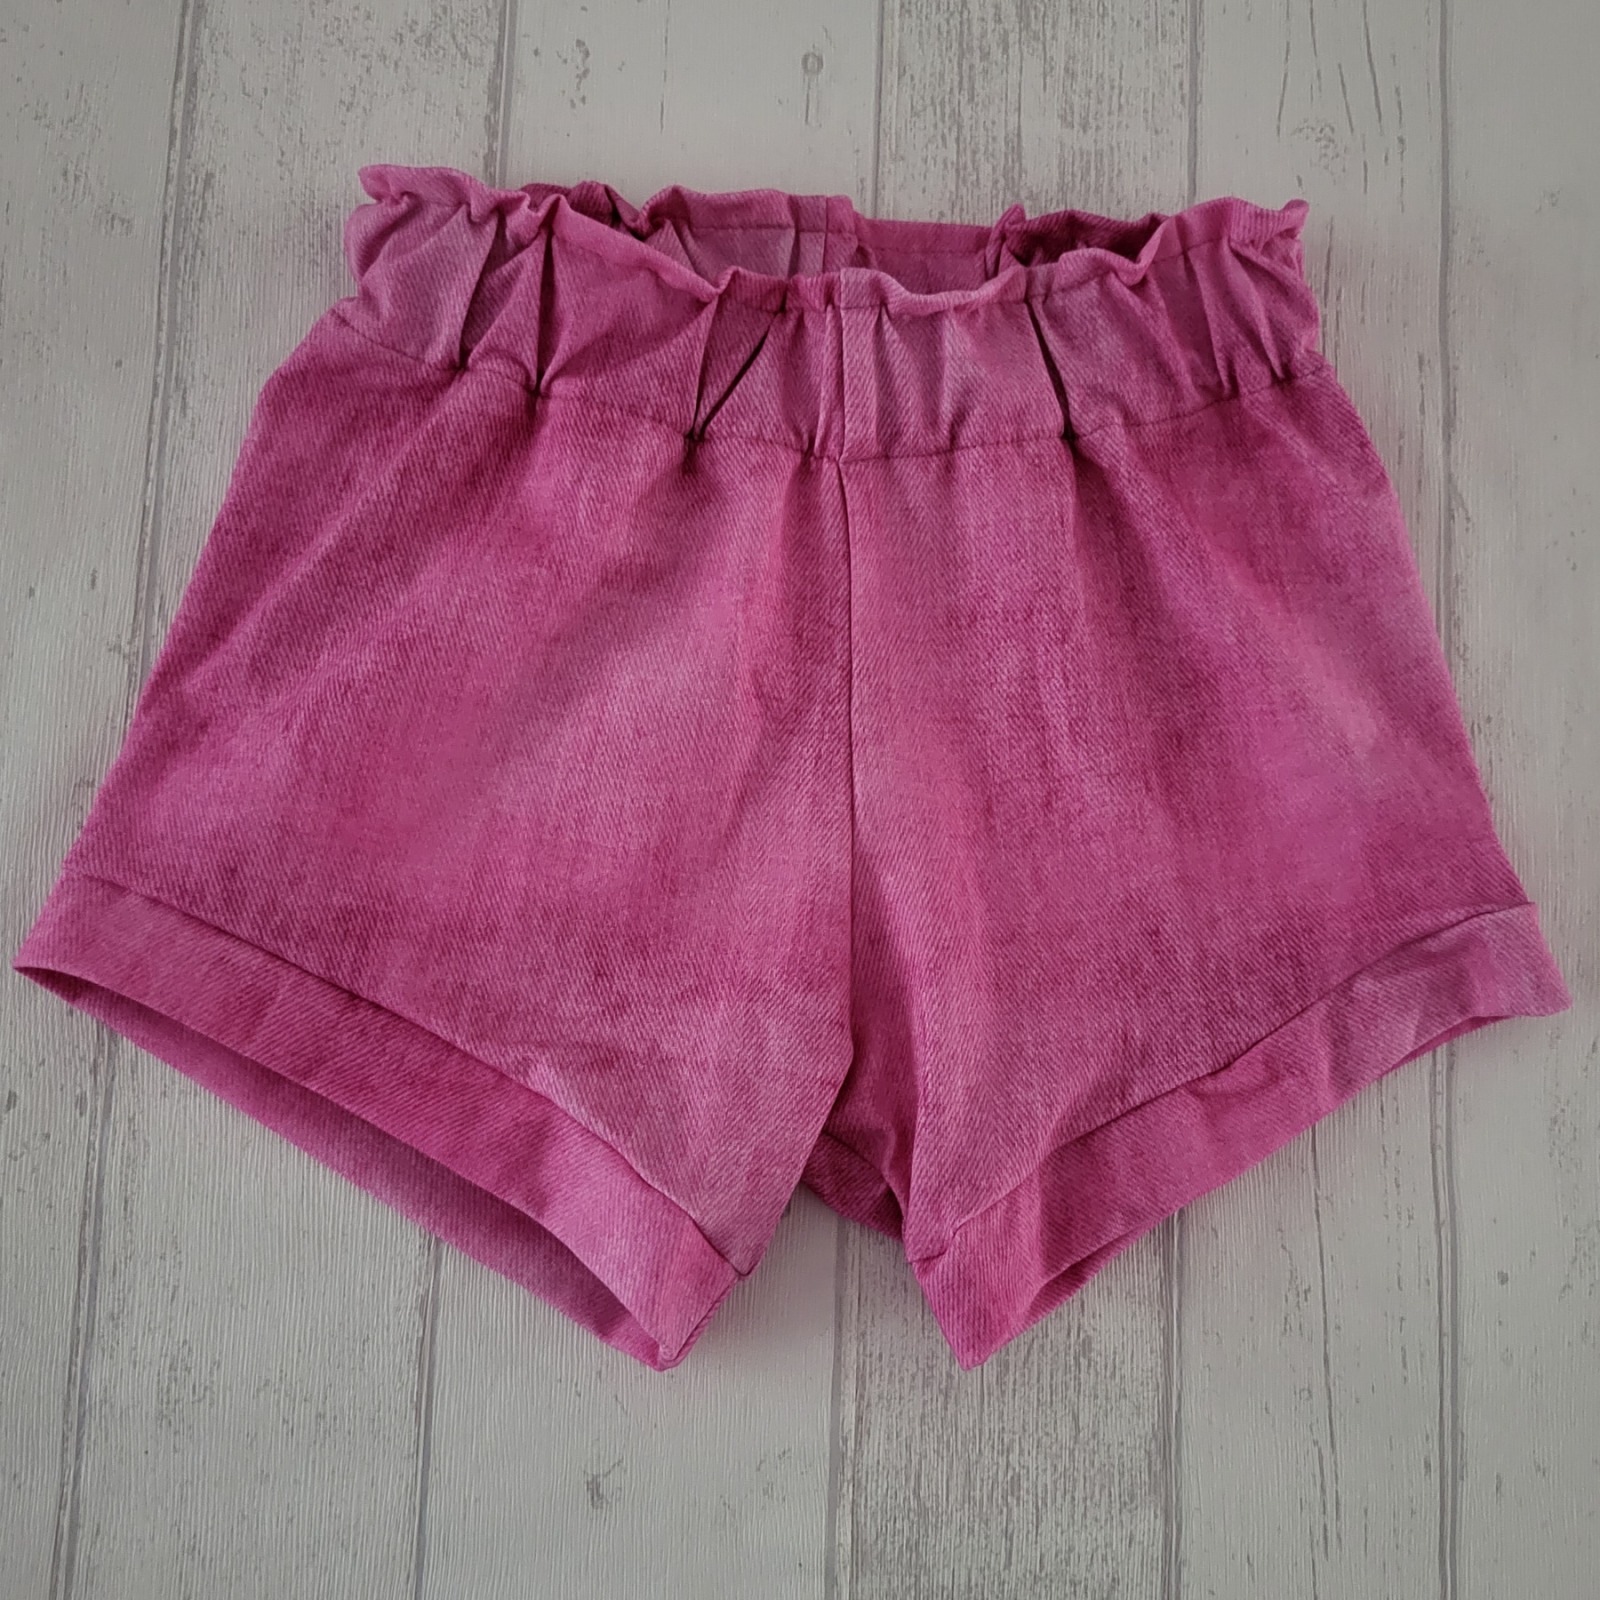 Sofortkauf Handmade Sunny Shorts Gr. 80 + 104 + 122 von NahtRabatz